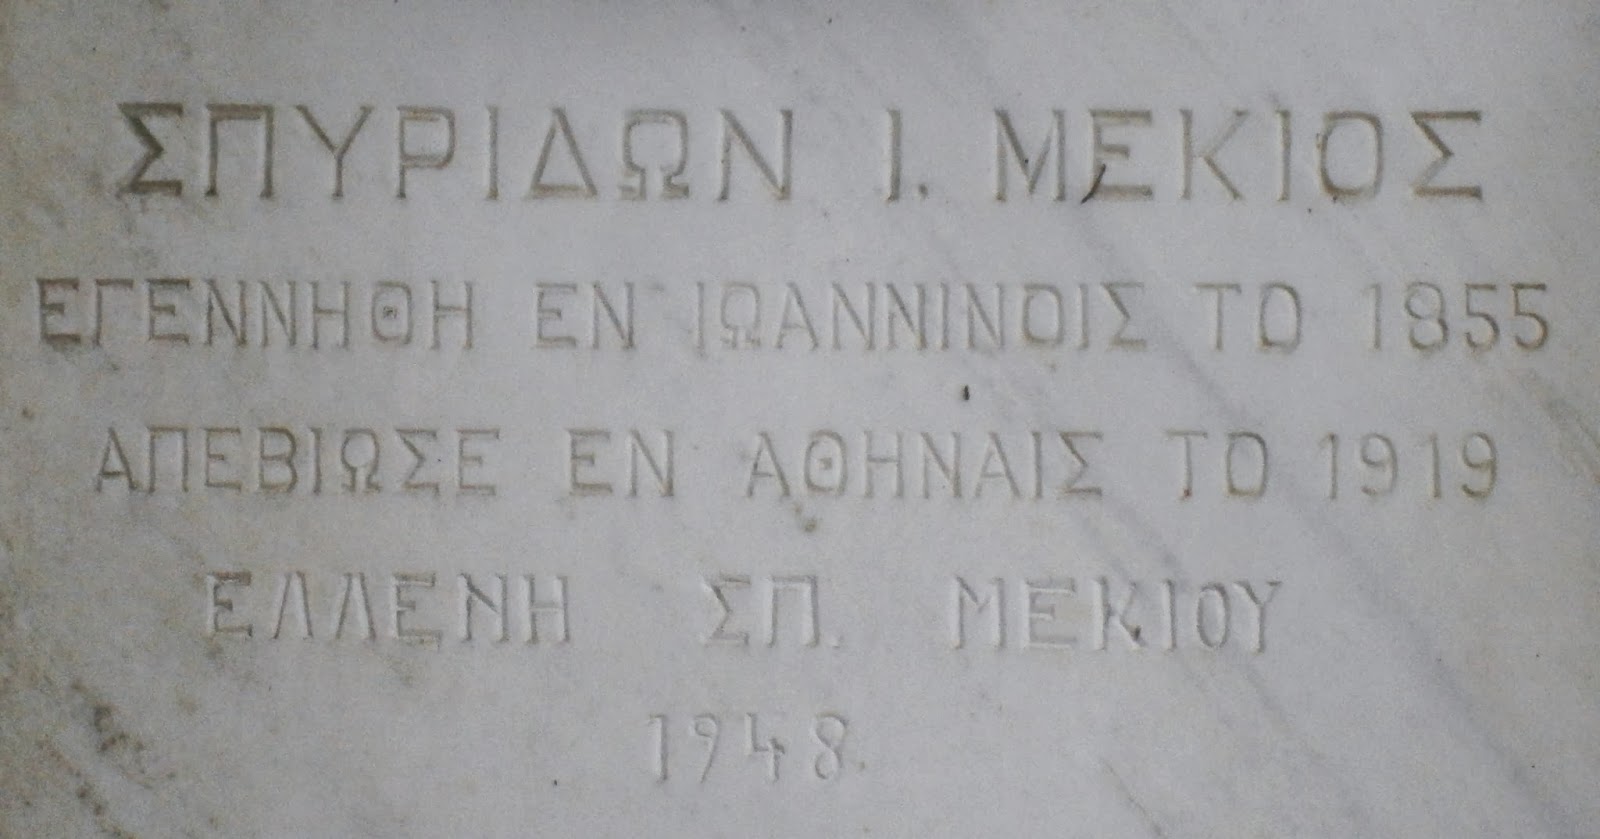 το μνημείο του Σπυρίδωνα Μέκιου στο Α΄ Δημοτικό Νεκροταφείο Ιωαννίνων